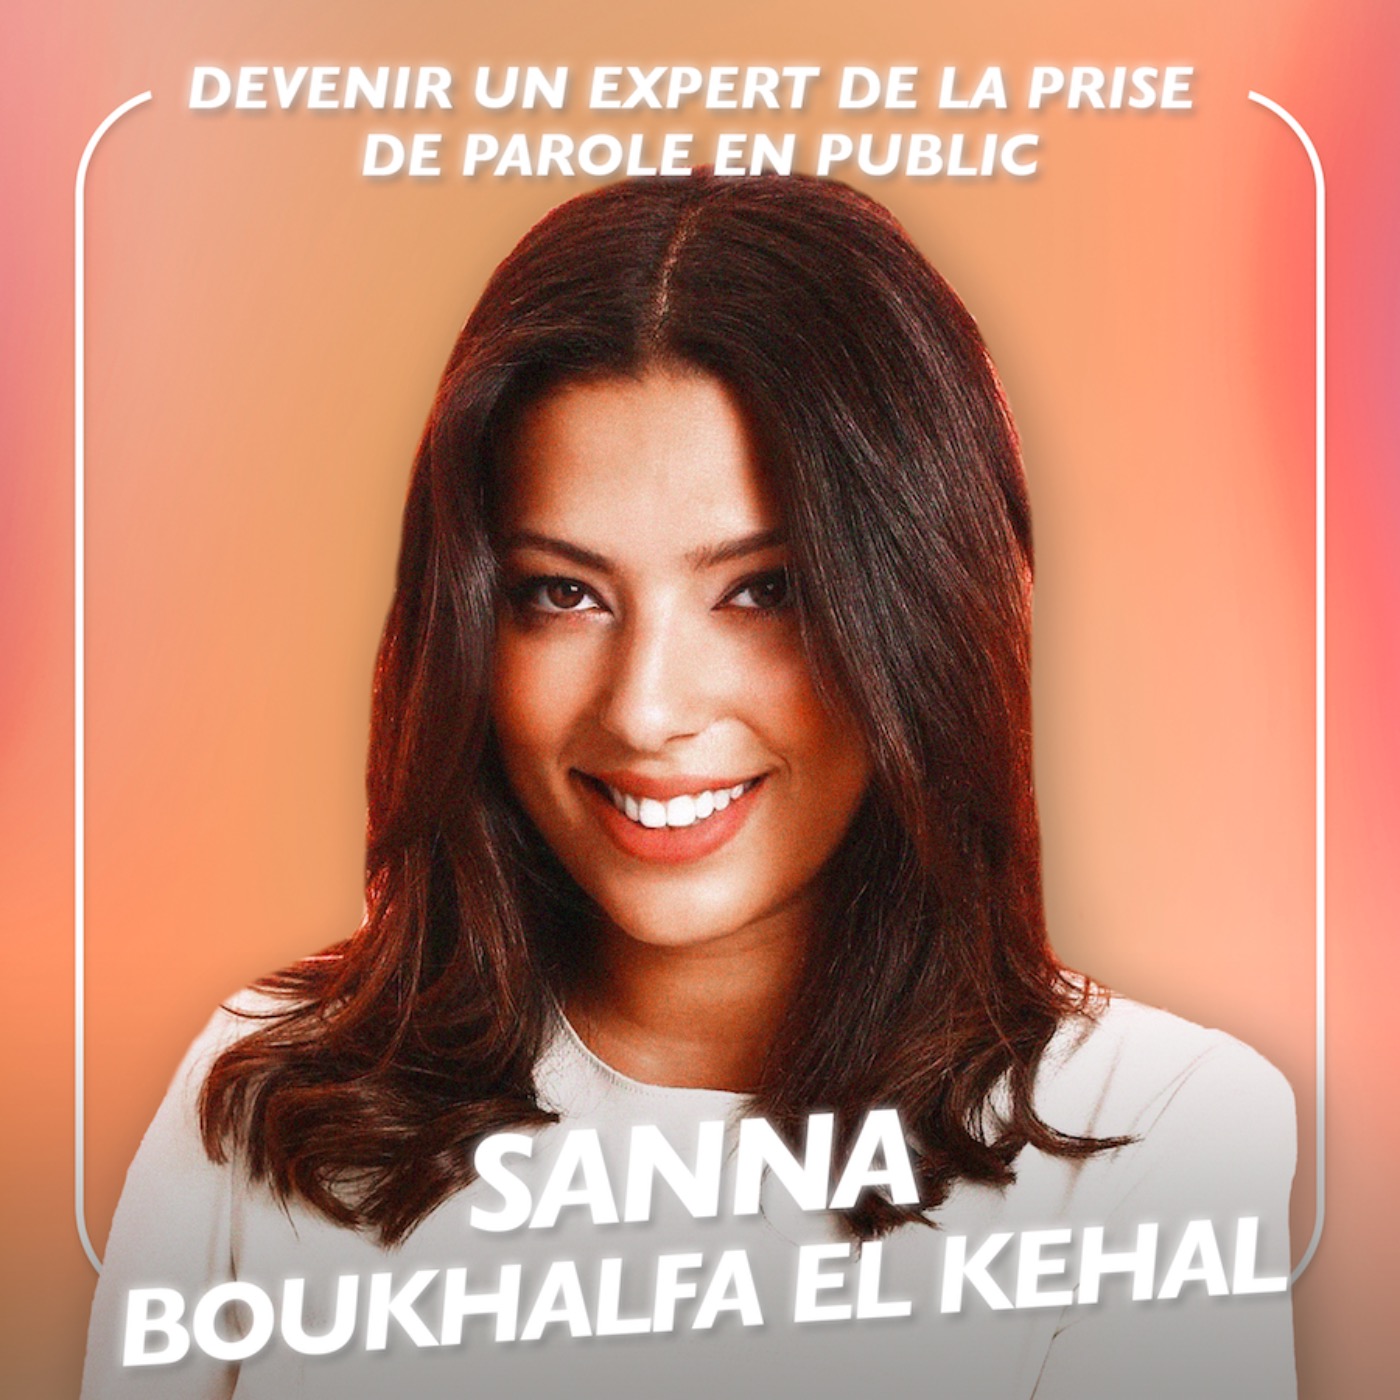 Devenir un expert de la prise de parole en public avec la professeure Sanna Boukhalfa El Kehal